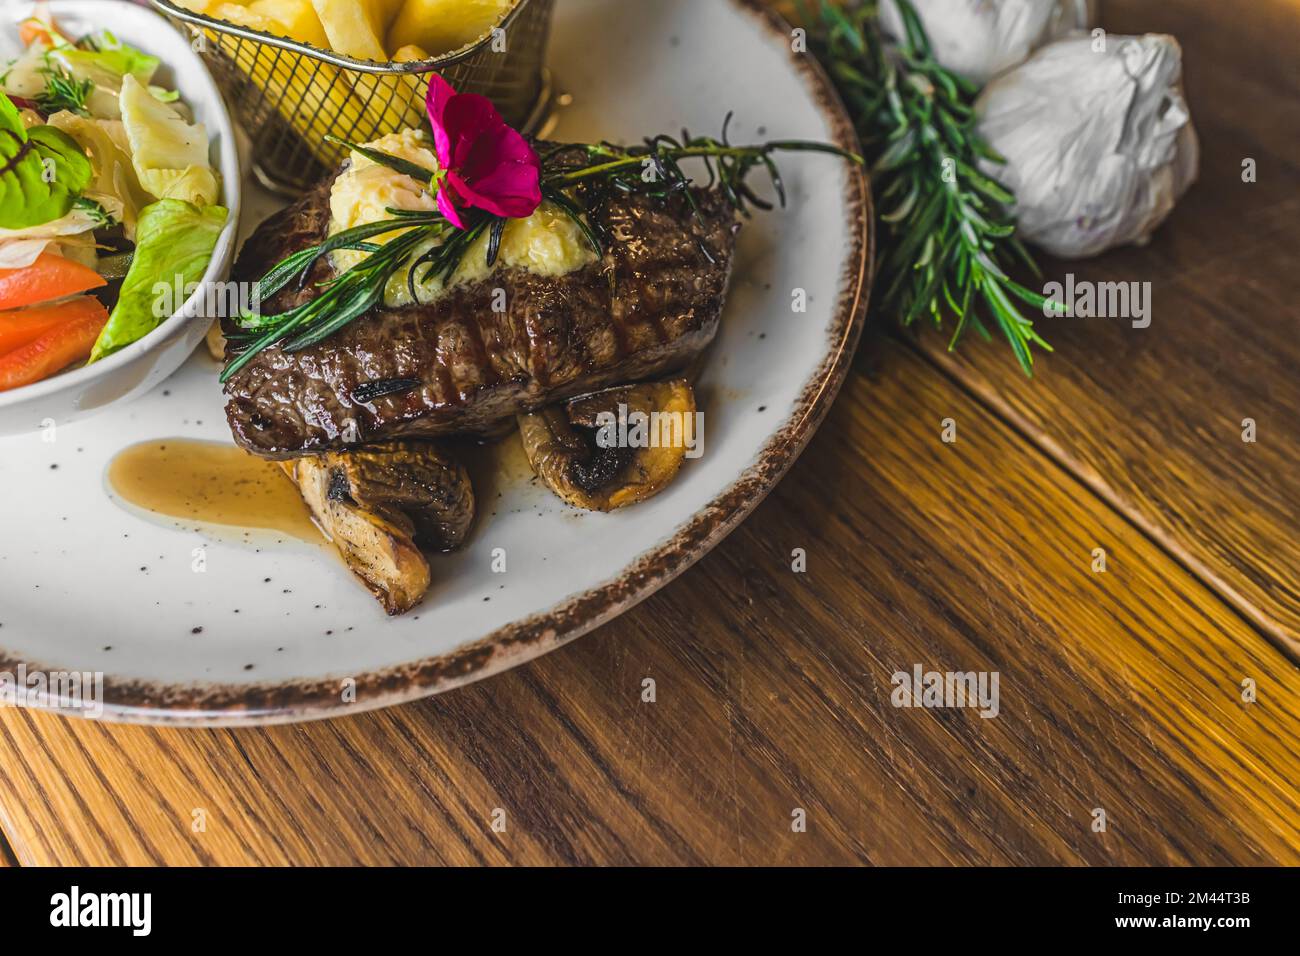 Vue de dessus d'un steak de striploin sur les champignons avec salade et frites sur le côté. Assiette avec plat à viande sur table en bois. Photo de haute qualité Banque D'Images